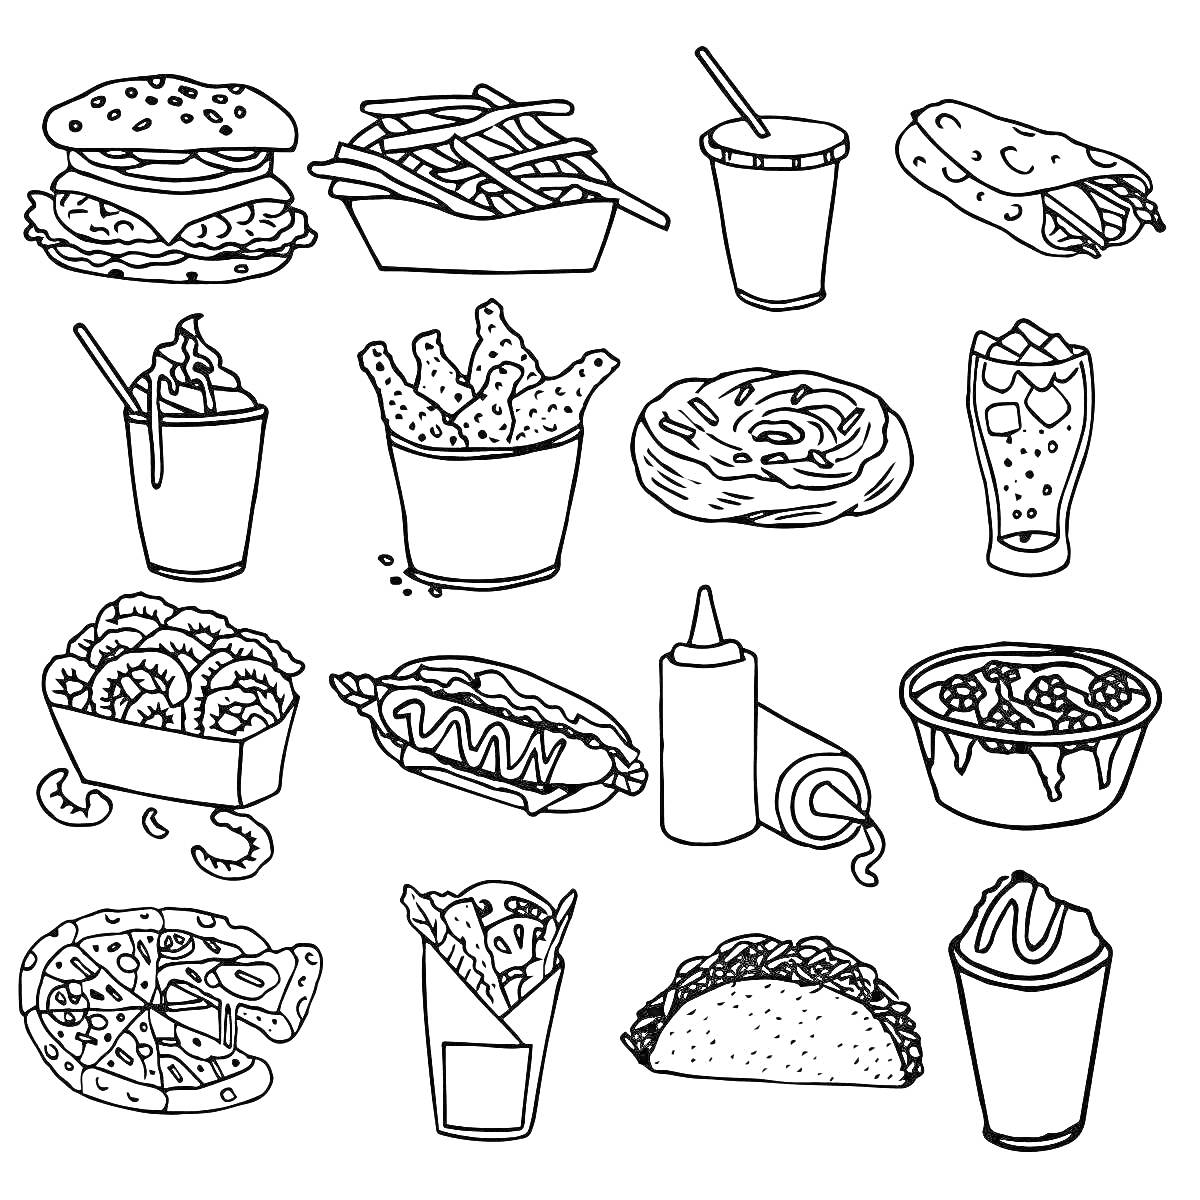 Ассортимент фастфуда: бургер, картофель фри, напиток с трубочкой, шаурма, напиток с кусочками льда, крылышки, пончик, газировка, луковые кольца, хот-дог, соус, тарт с ягодами, пицца, картофель фри в стакане, тако, молочный коктейль